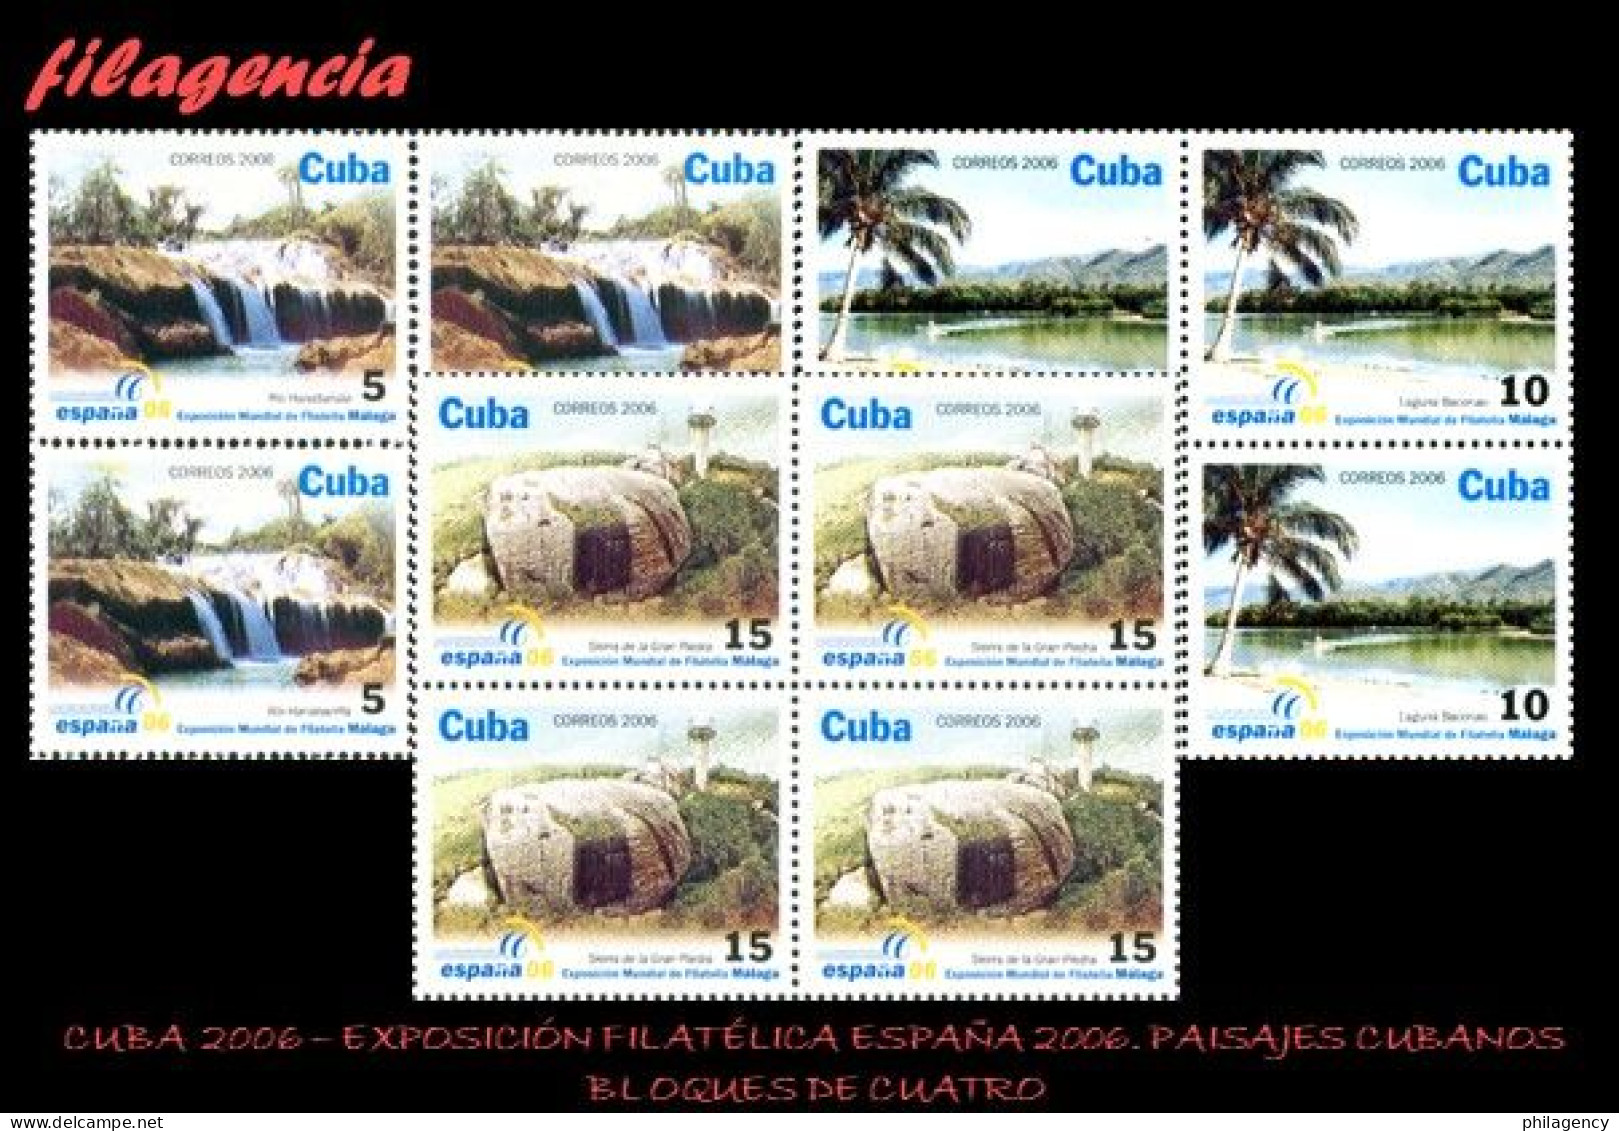 CUBA. BLOQUES DE CUATRO. 2006-23 EXPOSICIÓN FILATÉLICA ESPAÑA 2006. PAISAJES CUBANOS - Nuevos